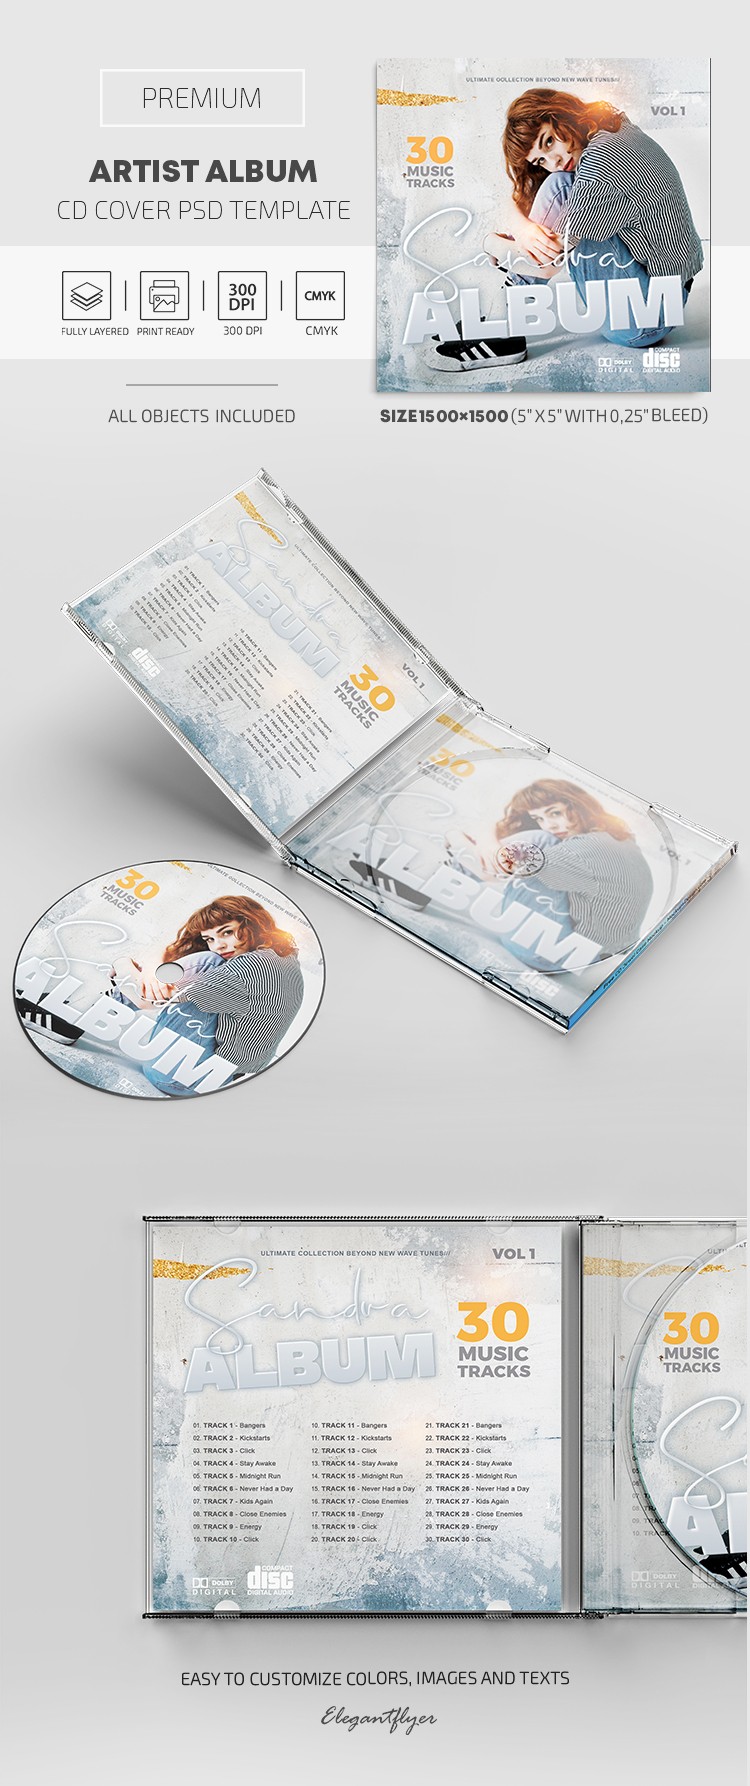 Künstler Album CD Cover by ElegantFlyer